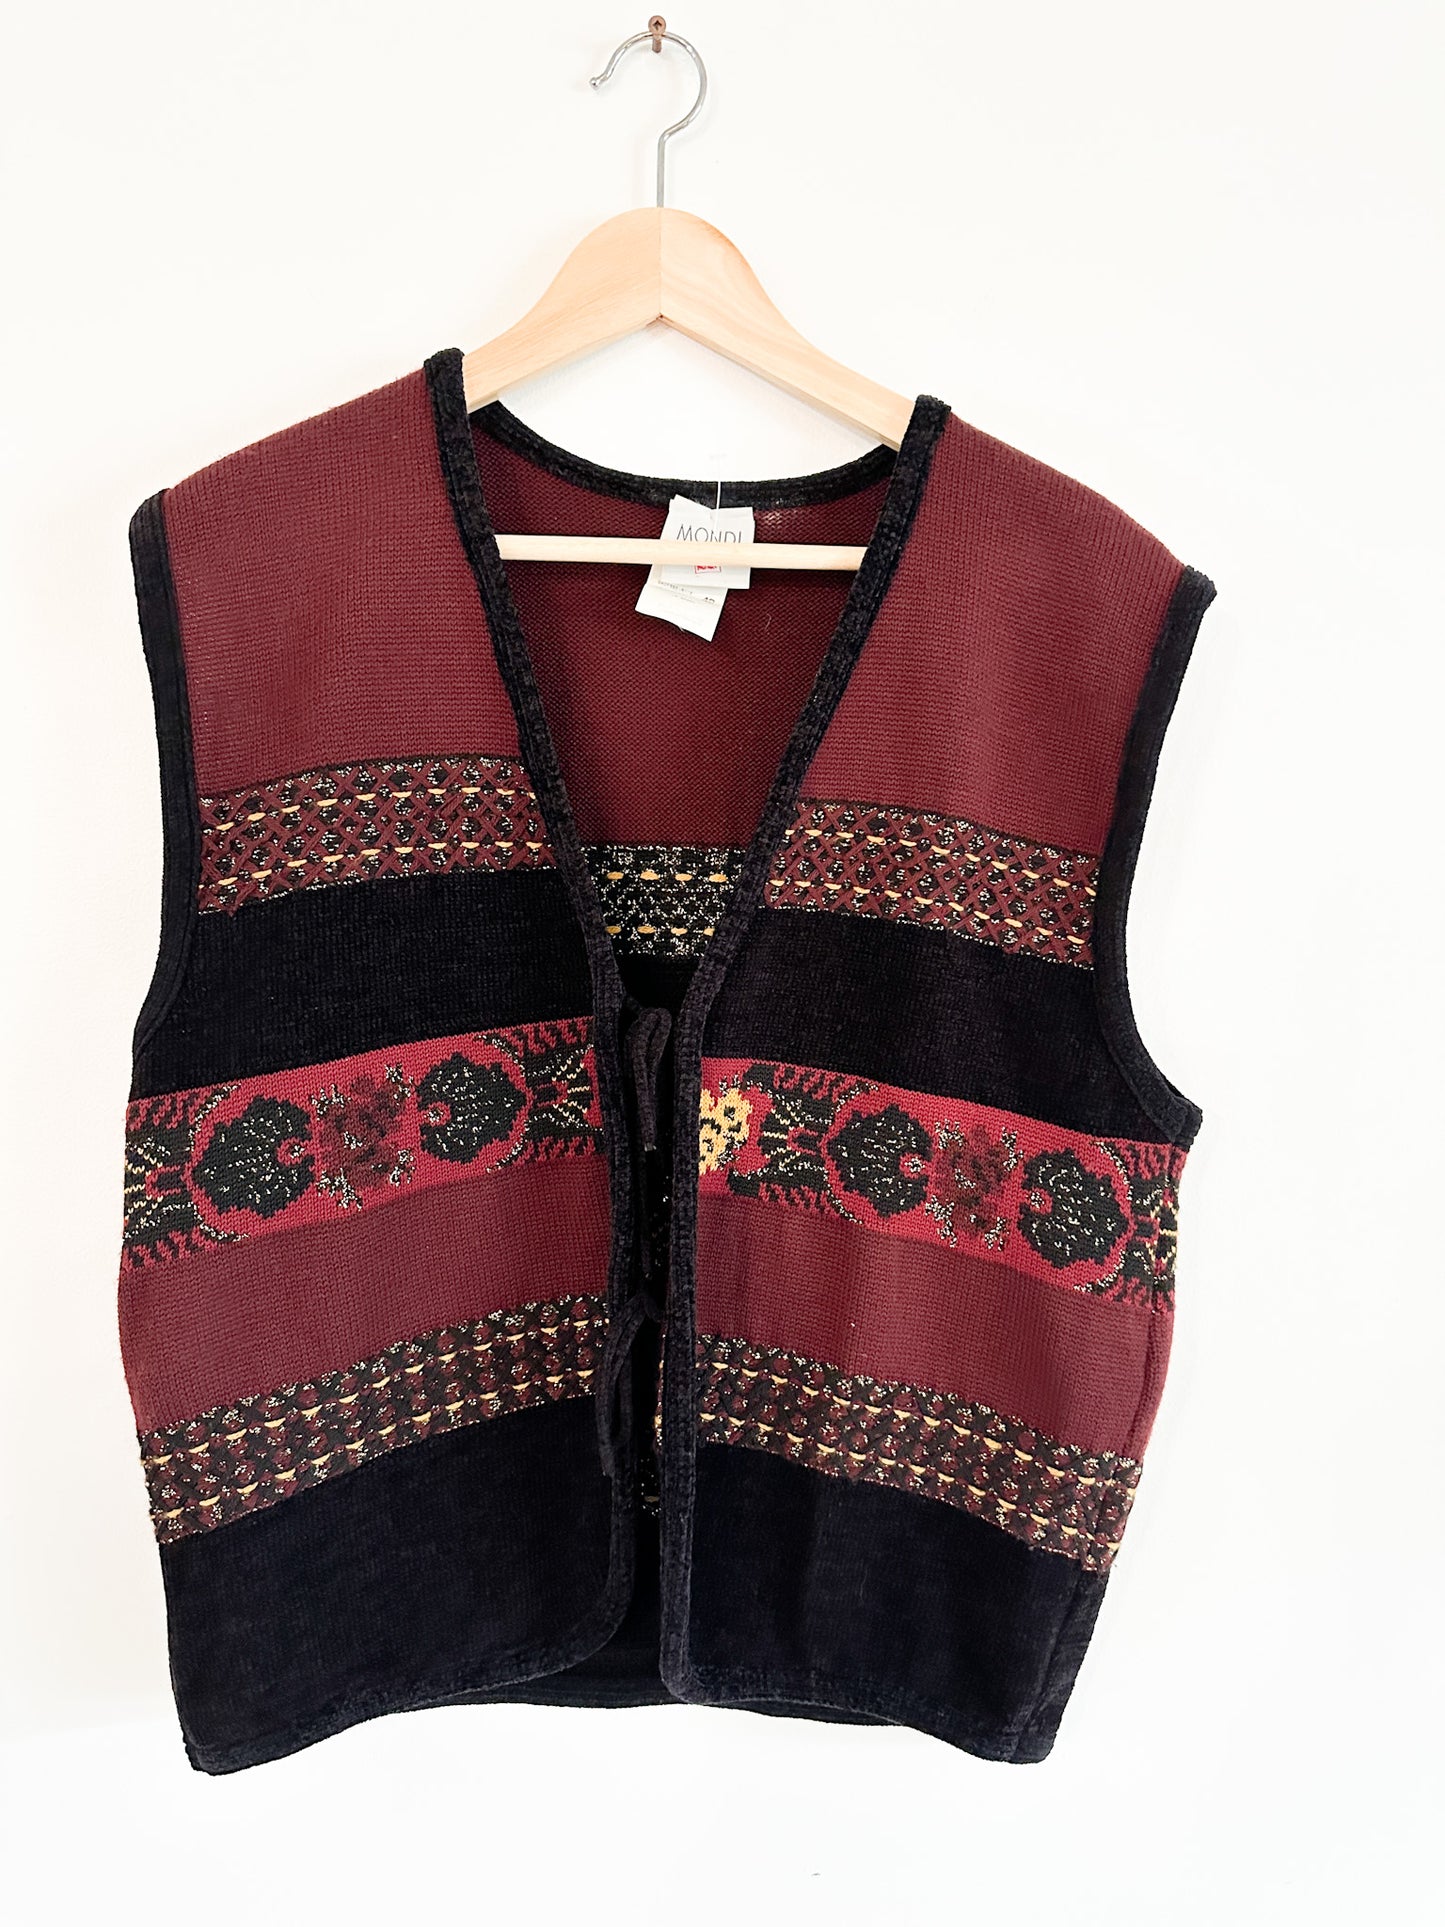 Mondi Woven Vest with front detailing | Vintage Vest| Size:42 / Large